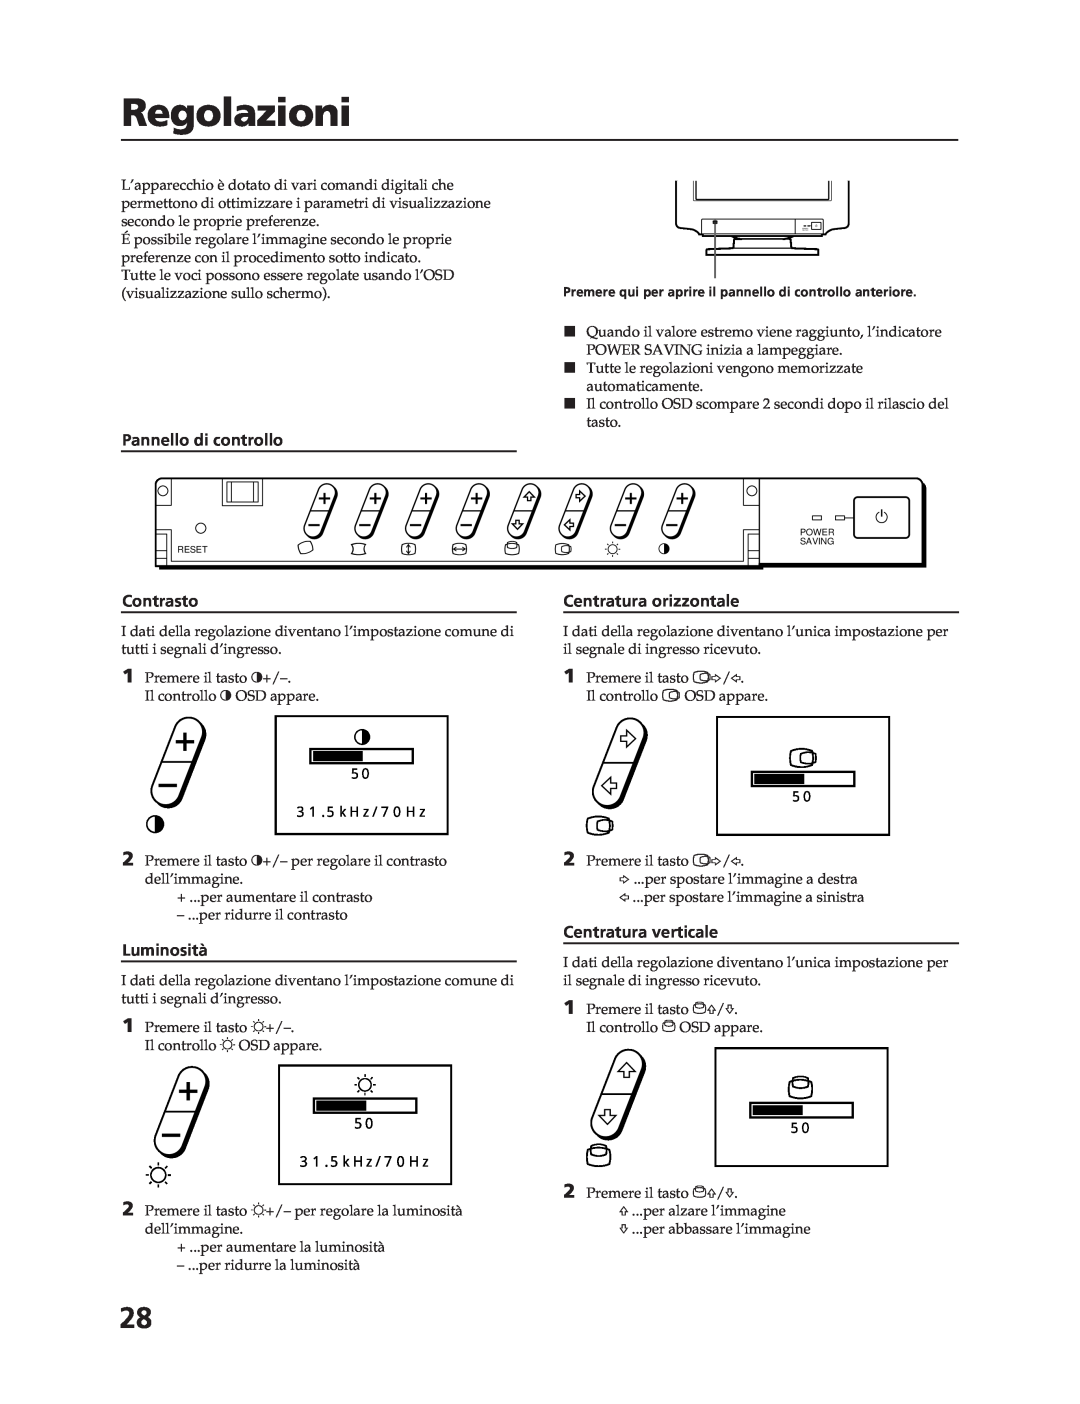 Sony CPD-17F03 Regolazioni, Pannello di controllo, Contrasto, Luminosità, Centratura orizzontale, Centratura verticale 